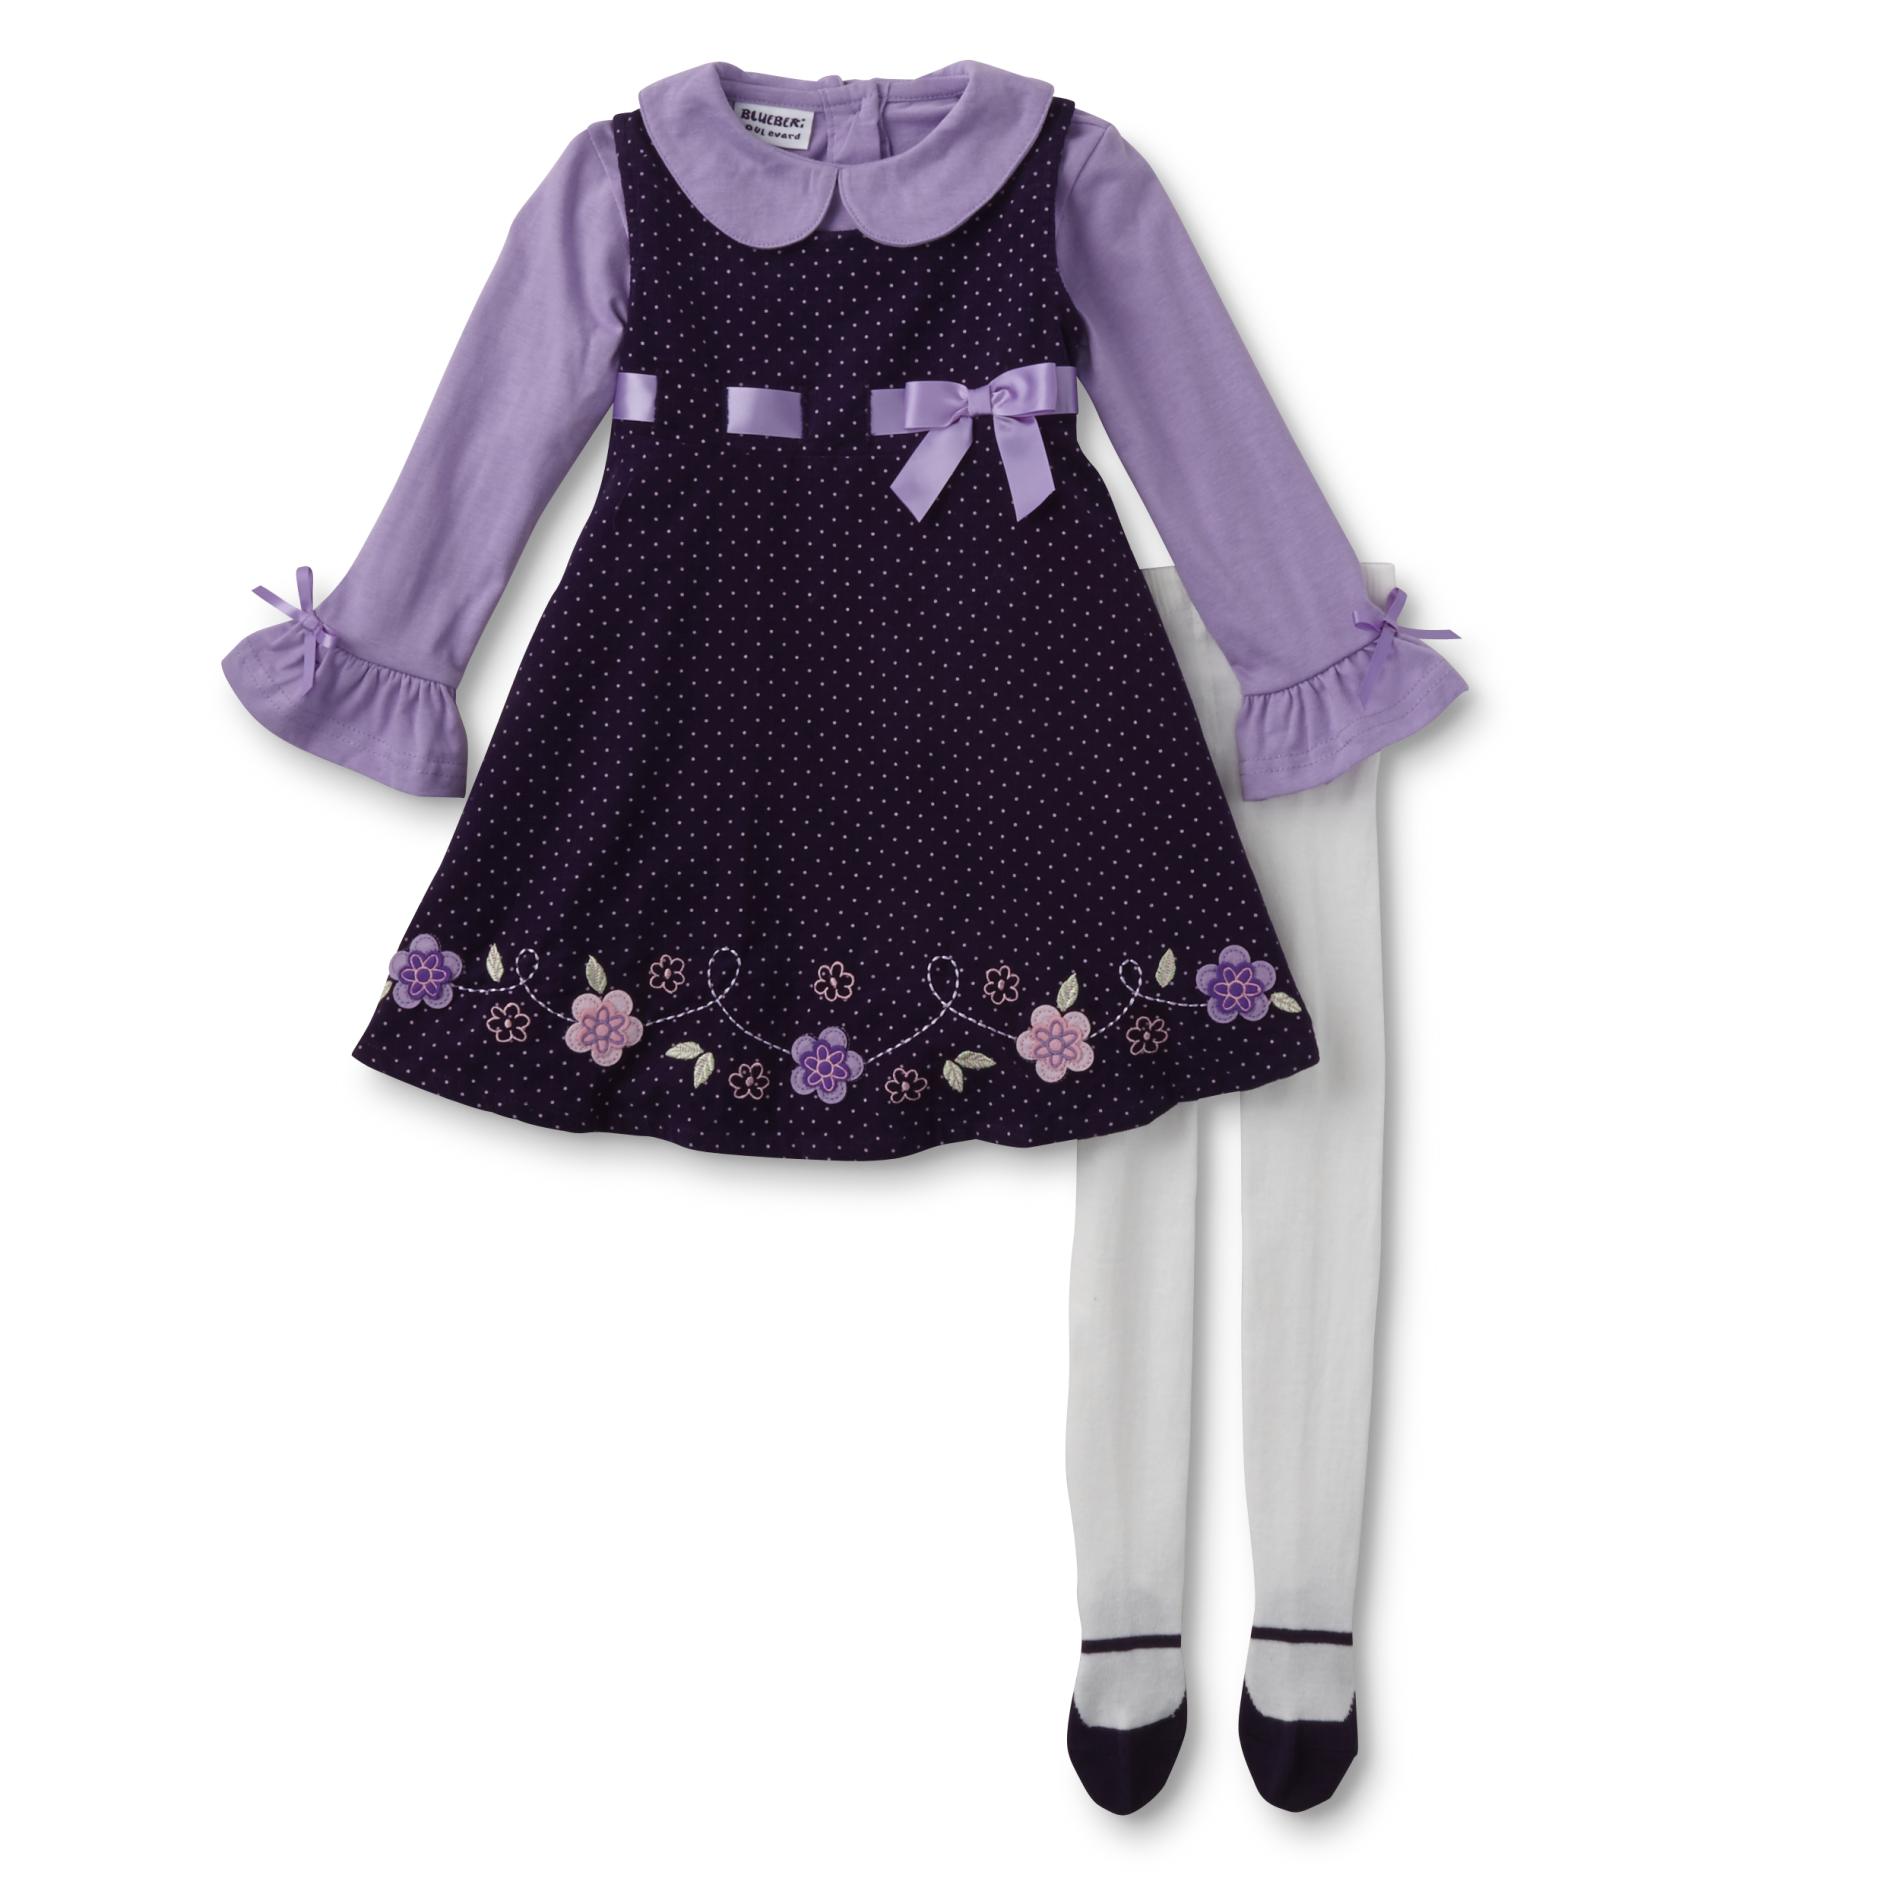 Blueberi Boulevard Infant & Toddler Girls' Jumper, Shirt & Tights - Dots & Floral